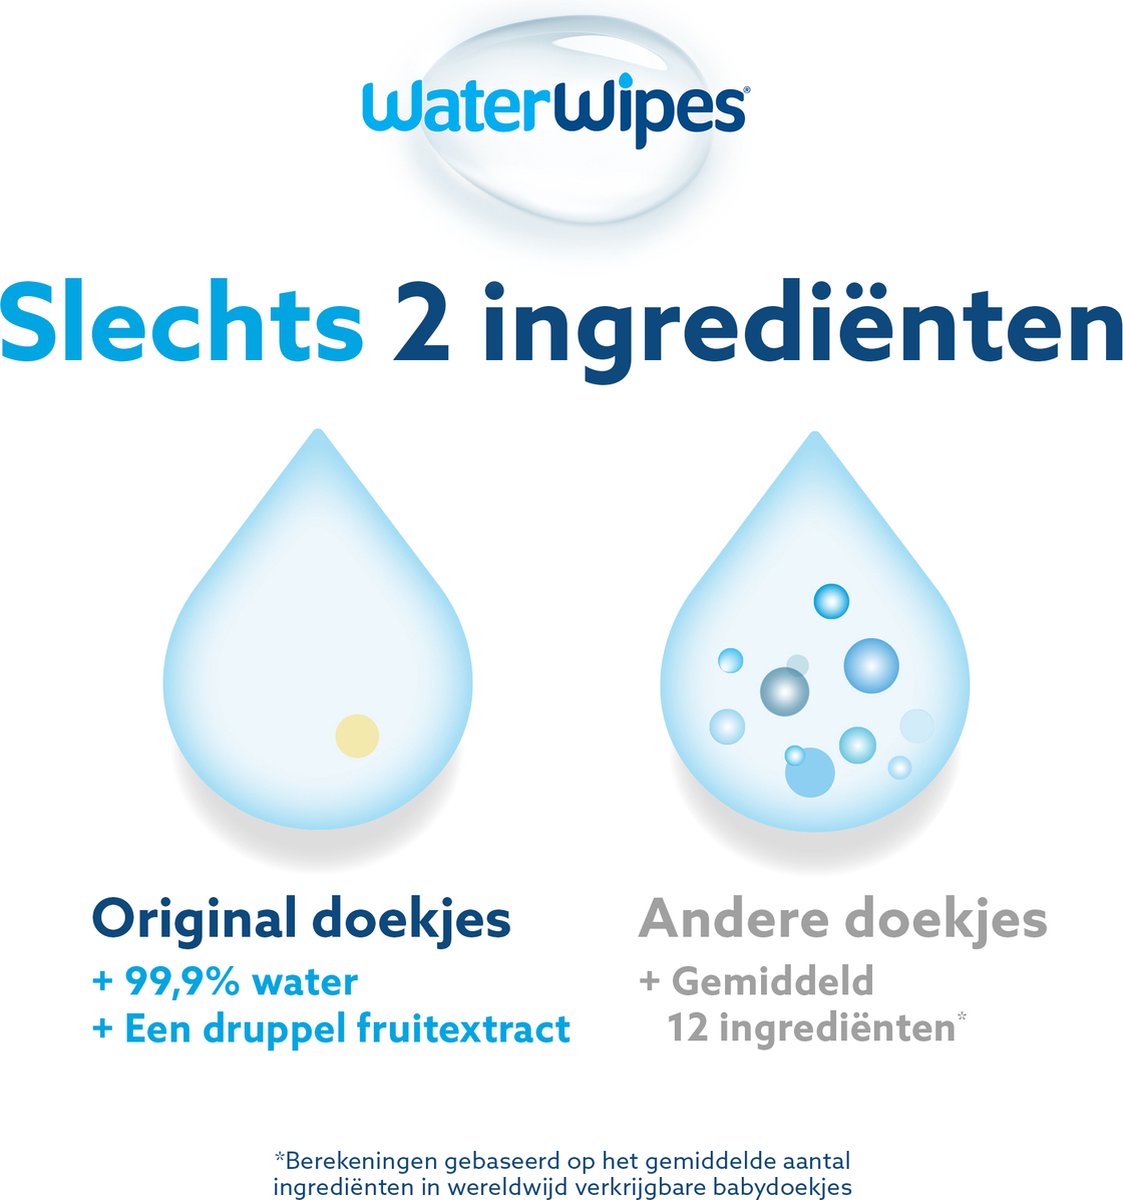 WaterWipes Lingettes Pour Bébés - 12x60 (720 Pièces)